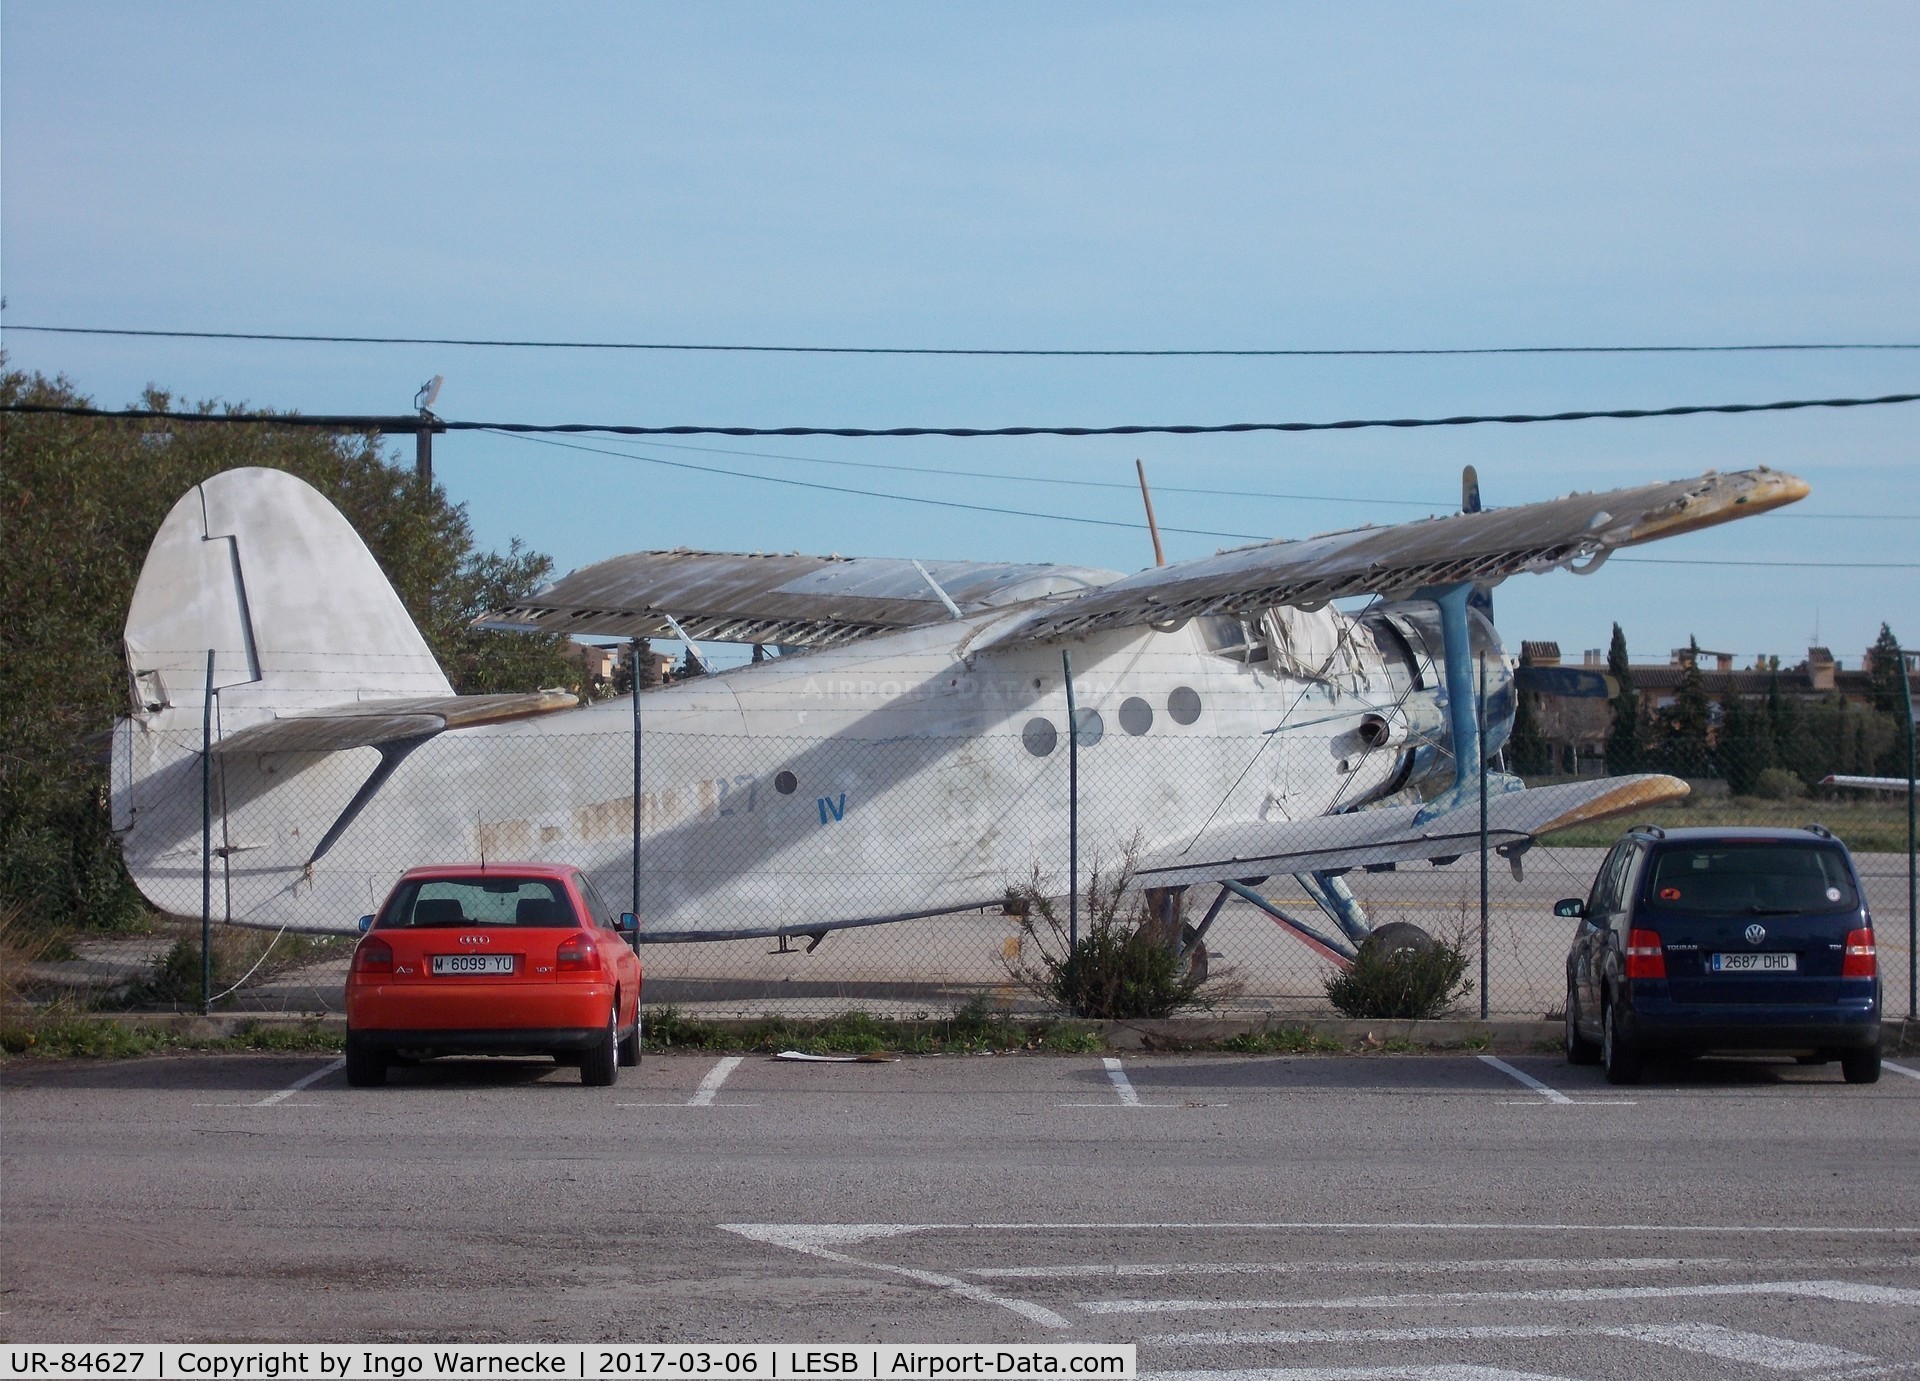 UR-84627, PZL-Mielec An-2R C/N 1G190-59, Antonov (PZL-Mielec) An-2R COLT (awaiting restoration?) at Mallorca's Son Bonet airport